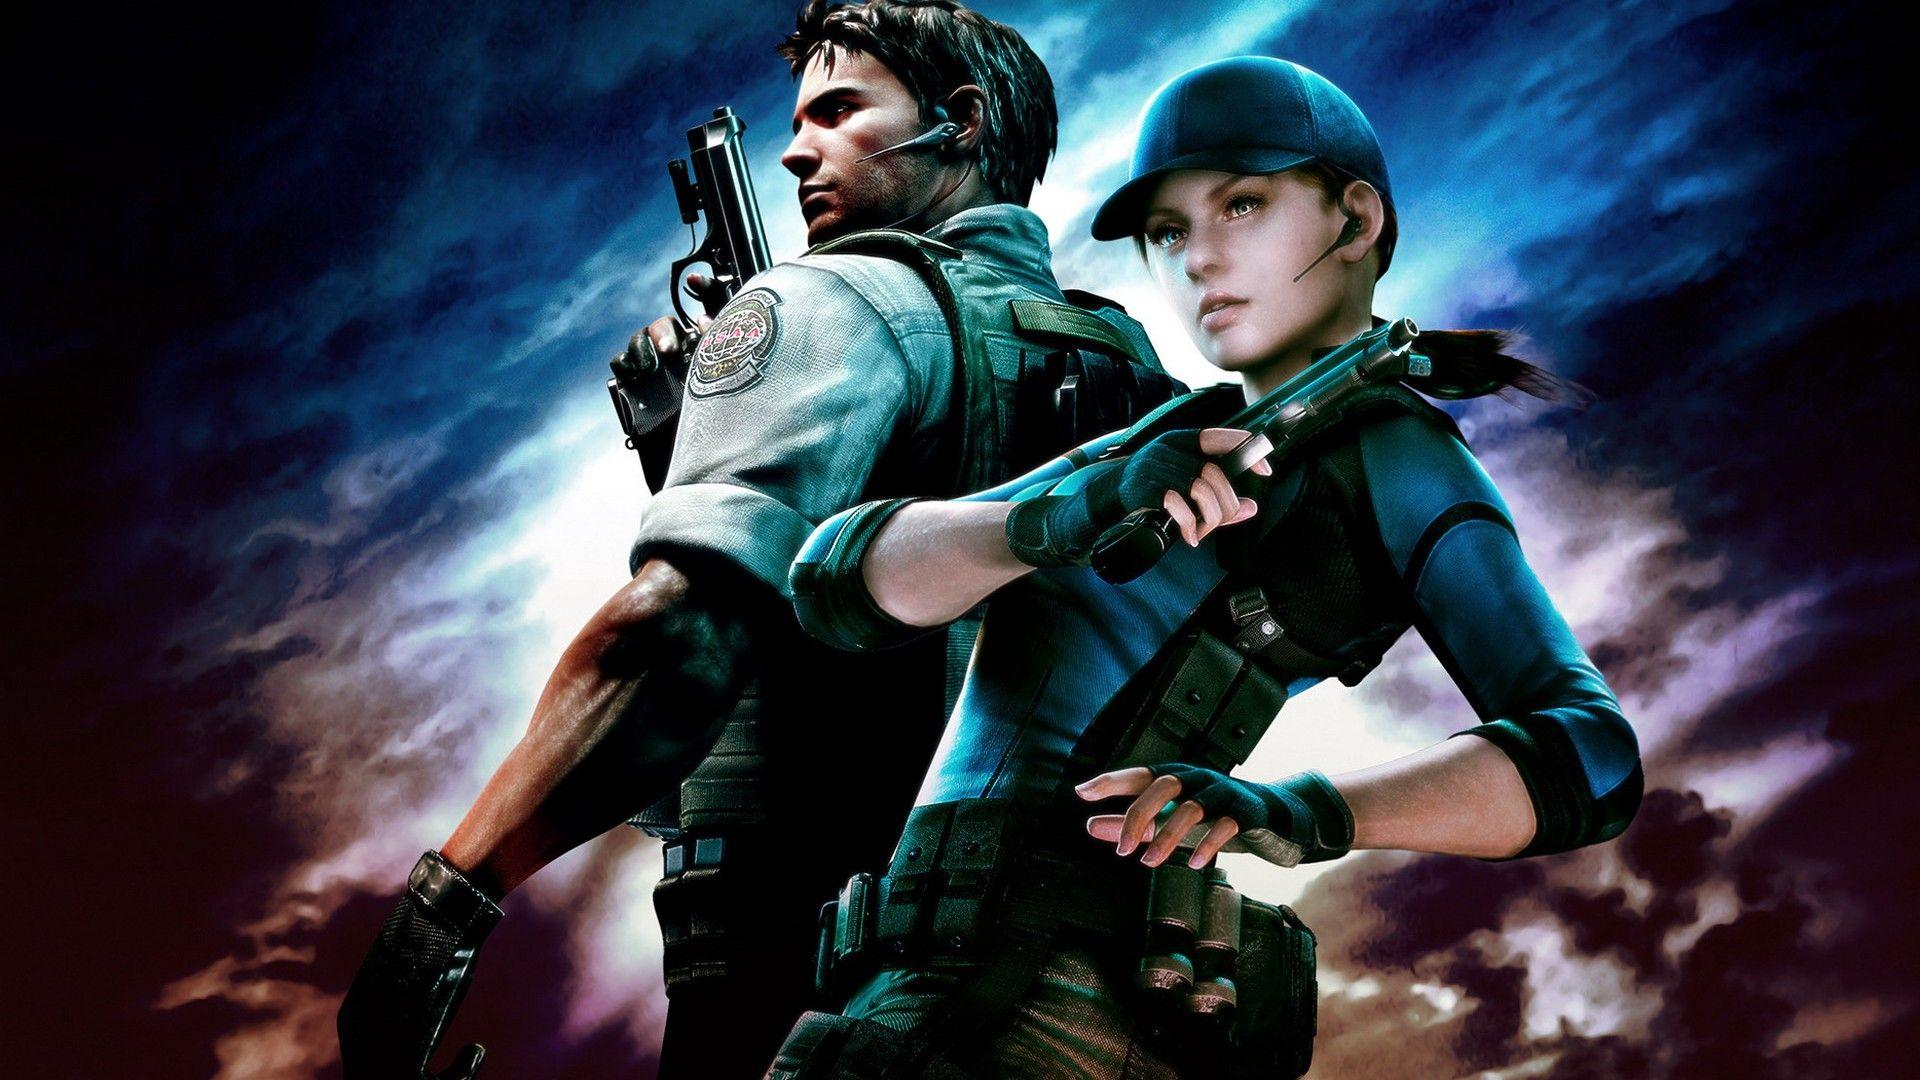 Wallpaper Wallpaper from Resident Evil: Revelations